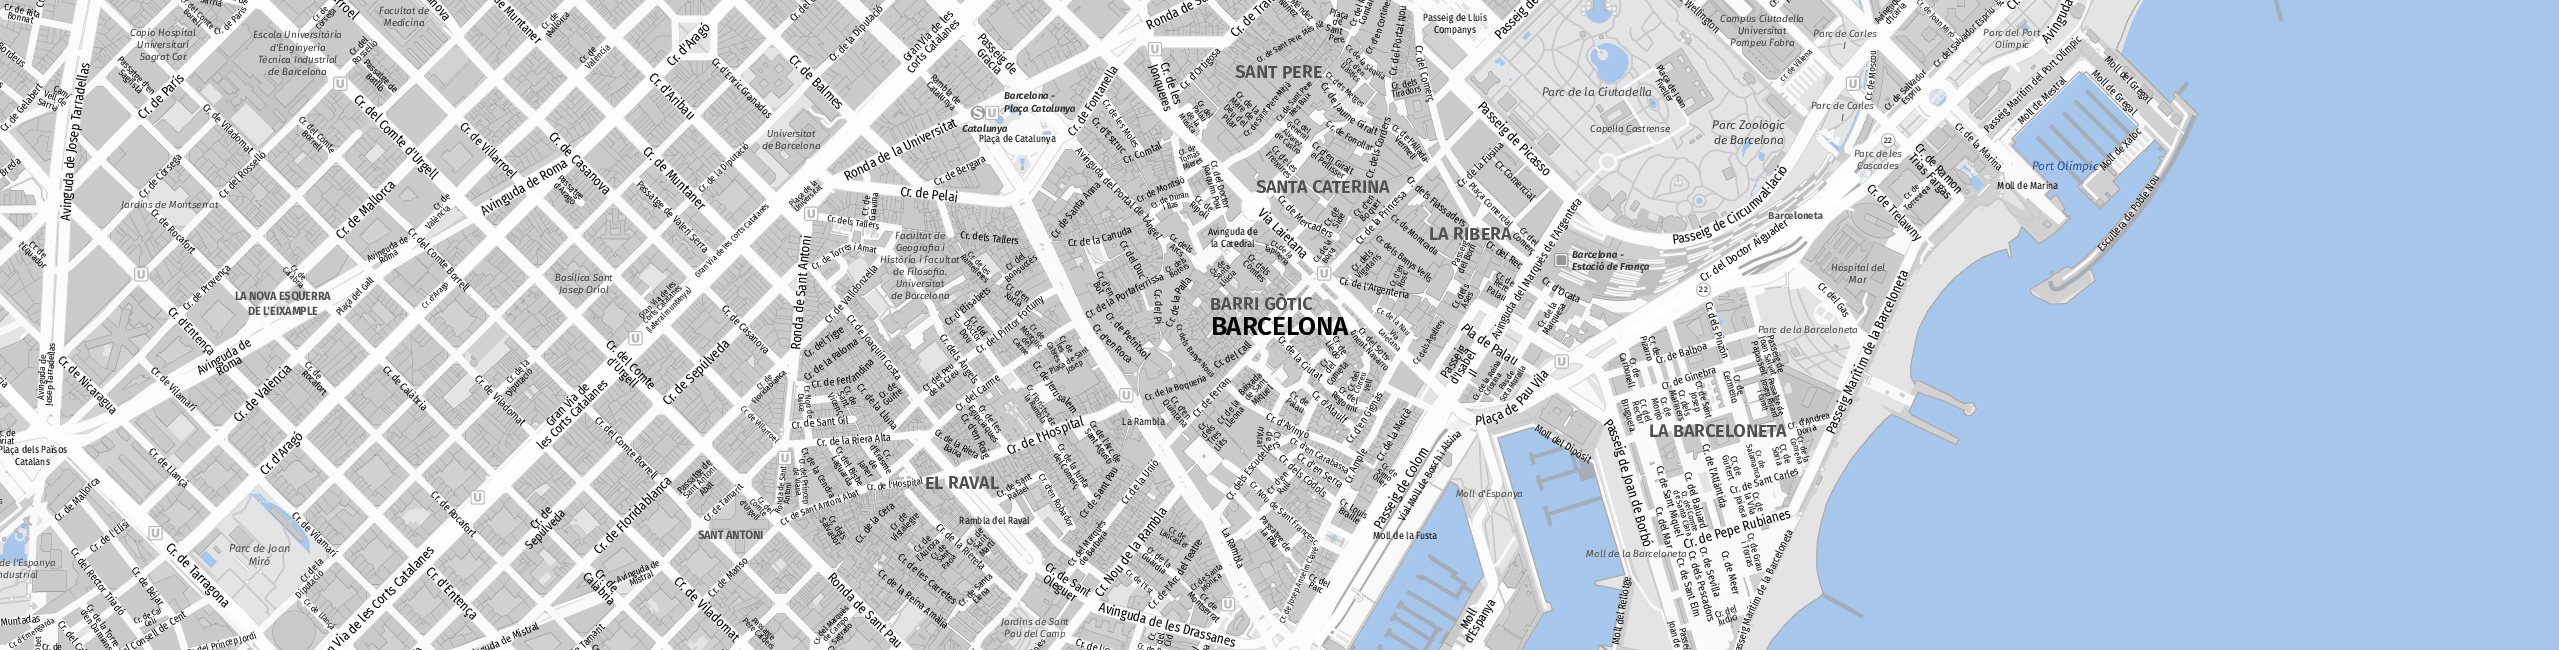 Stadtplan Barcelona zum Downloaden.